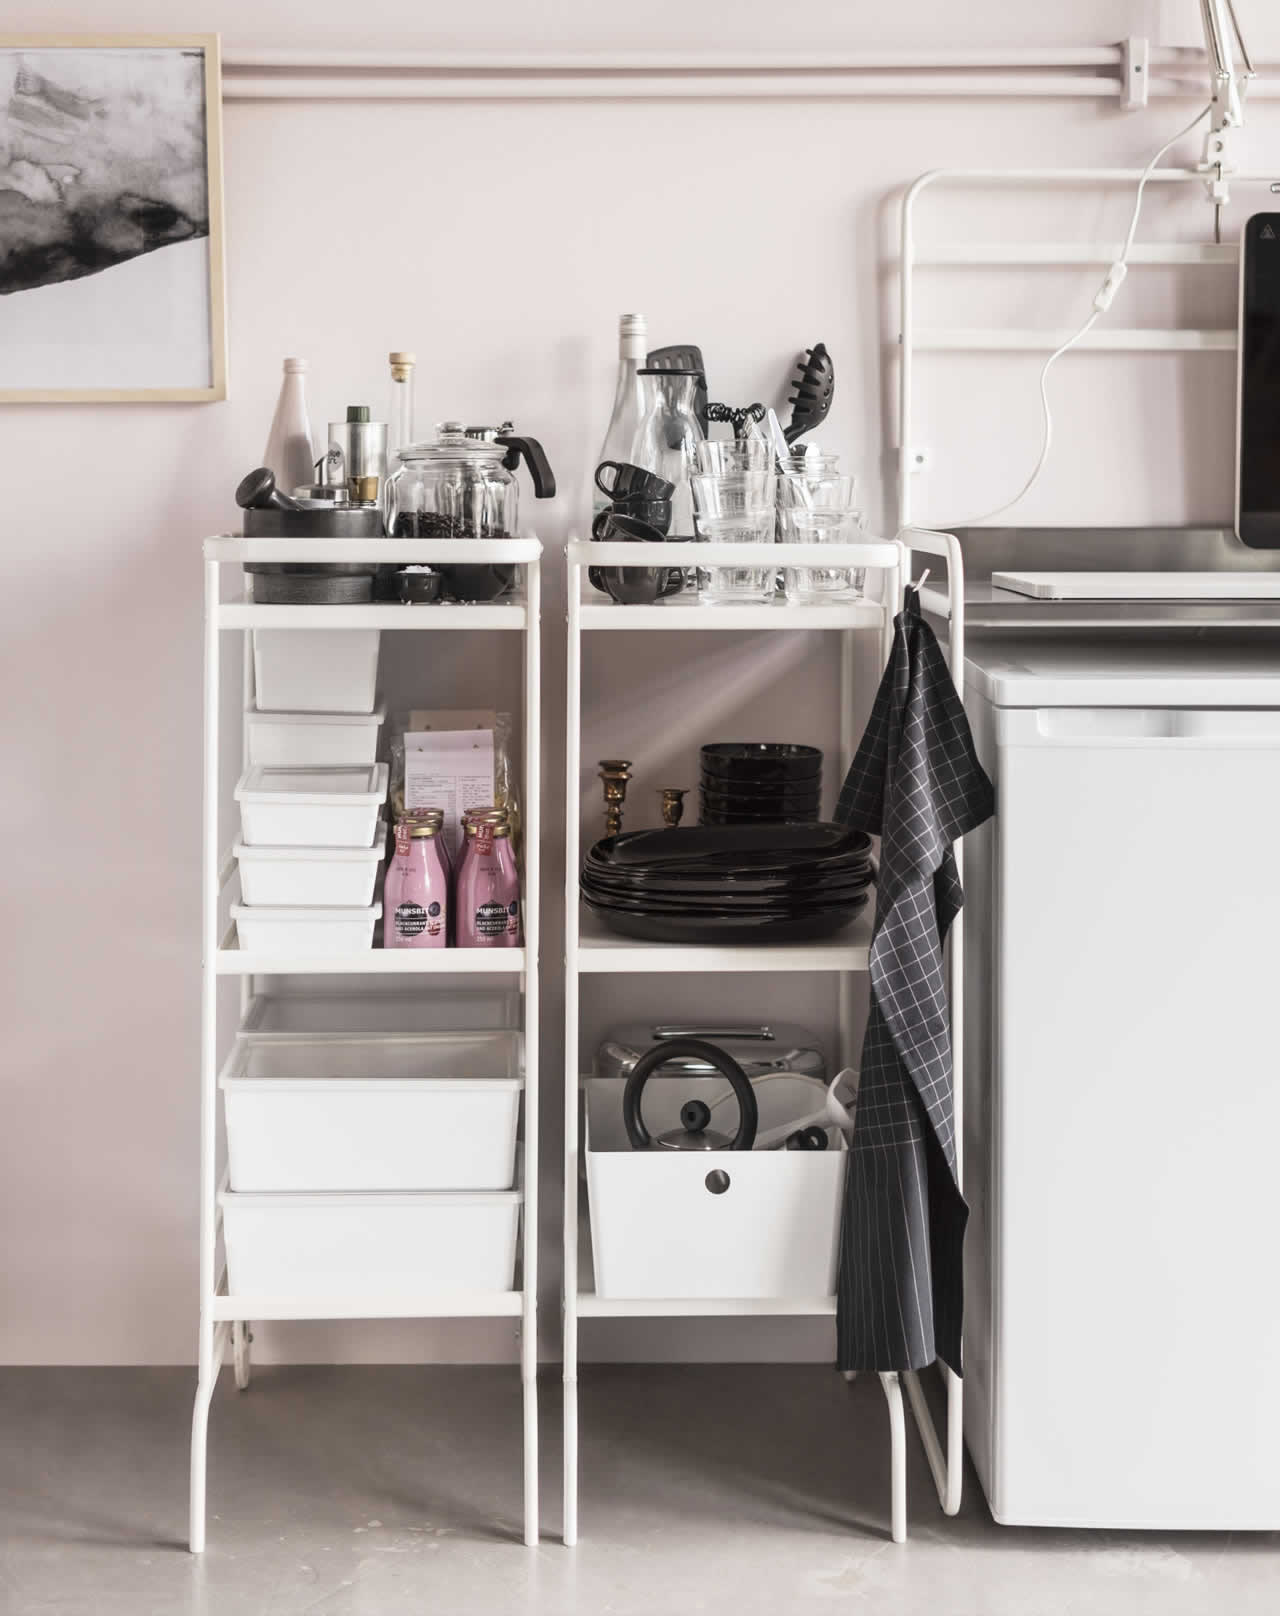 IKEA İyi Fikirler - Kurması ve kaldırması kolay bir mutfak